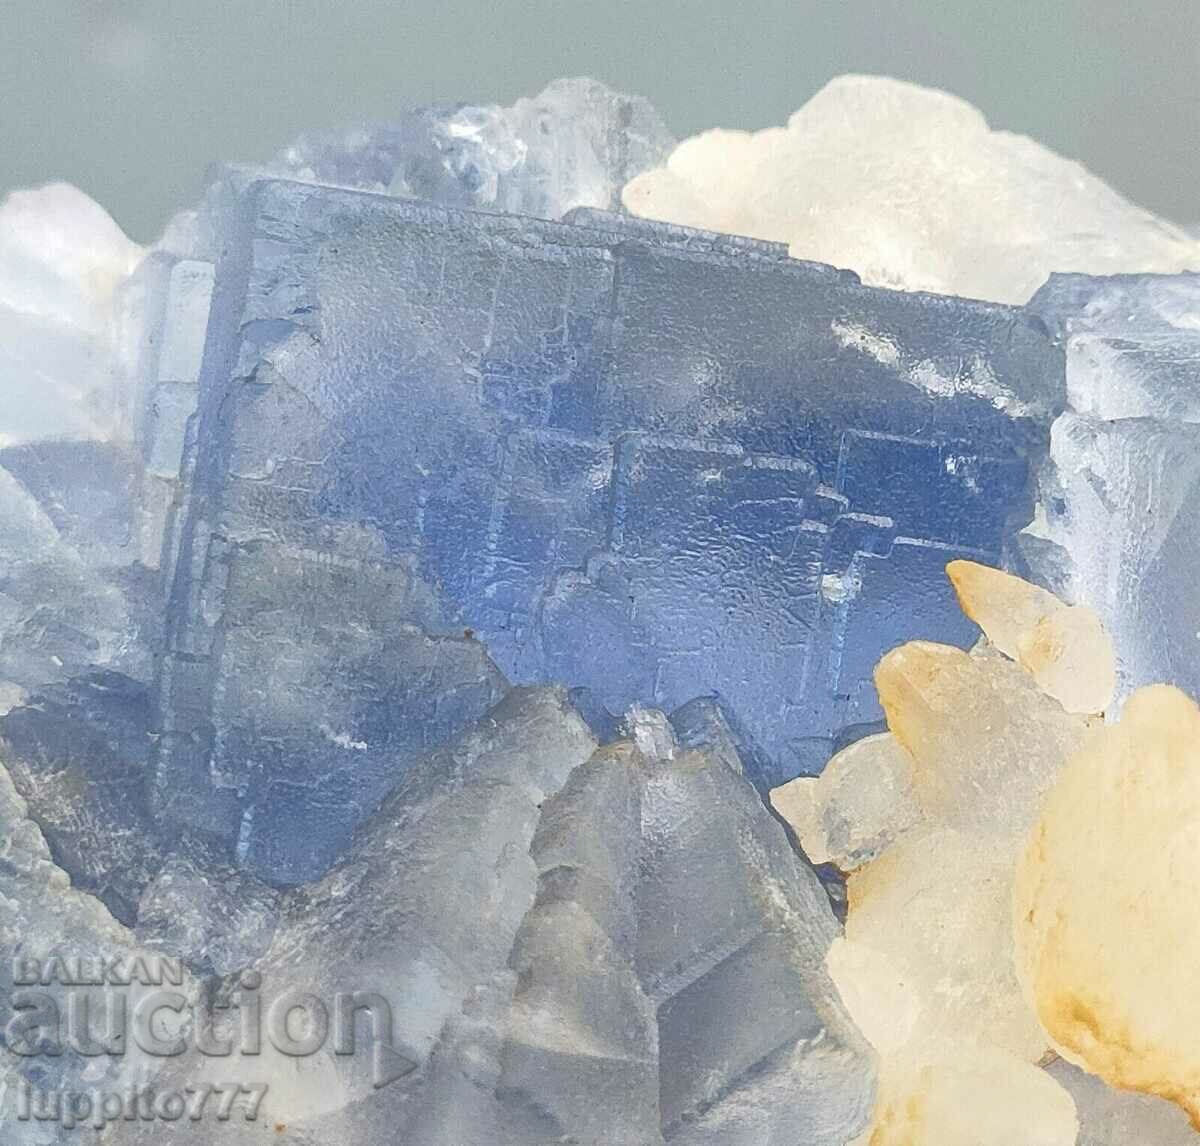 176 γραμμάρια φυσικού μπλε φθορίτη με ασβεστίτη σε μήτρα μοναδικό